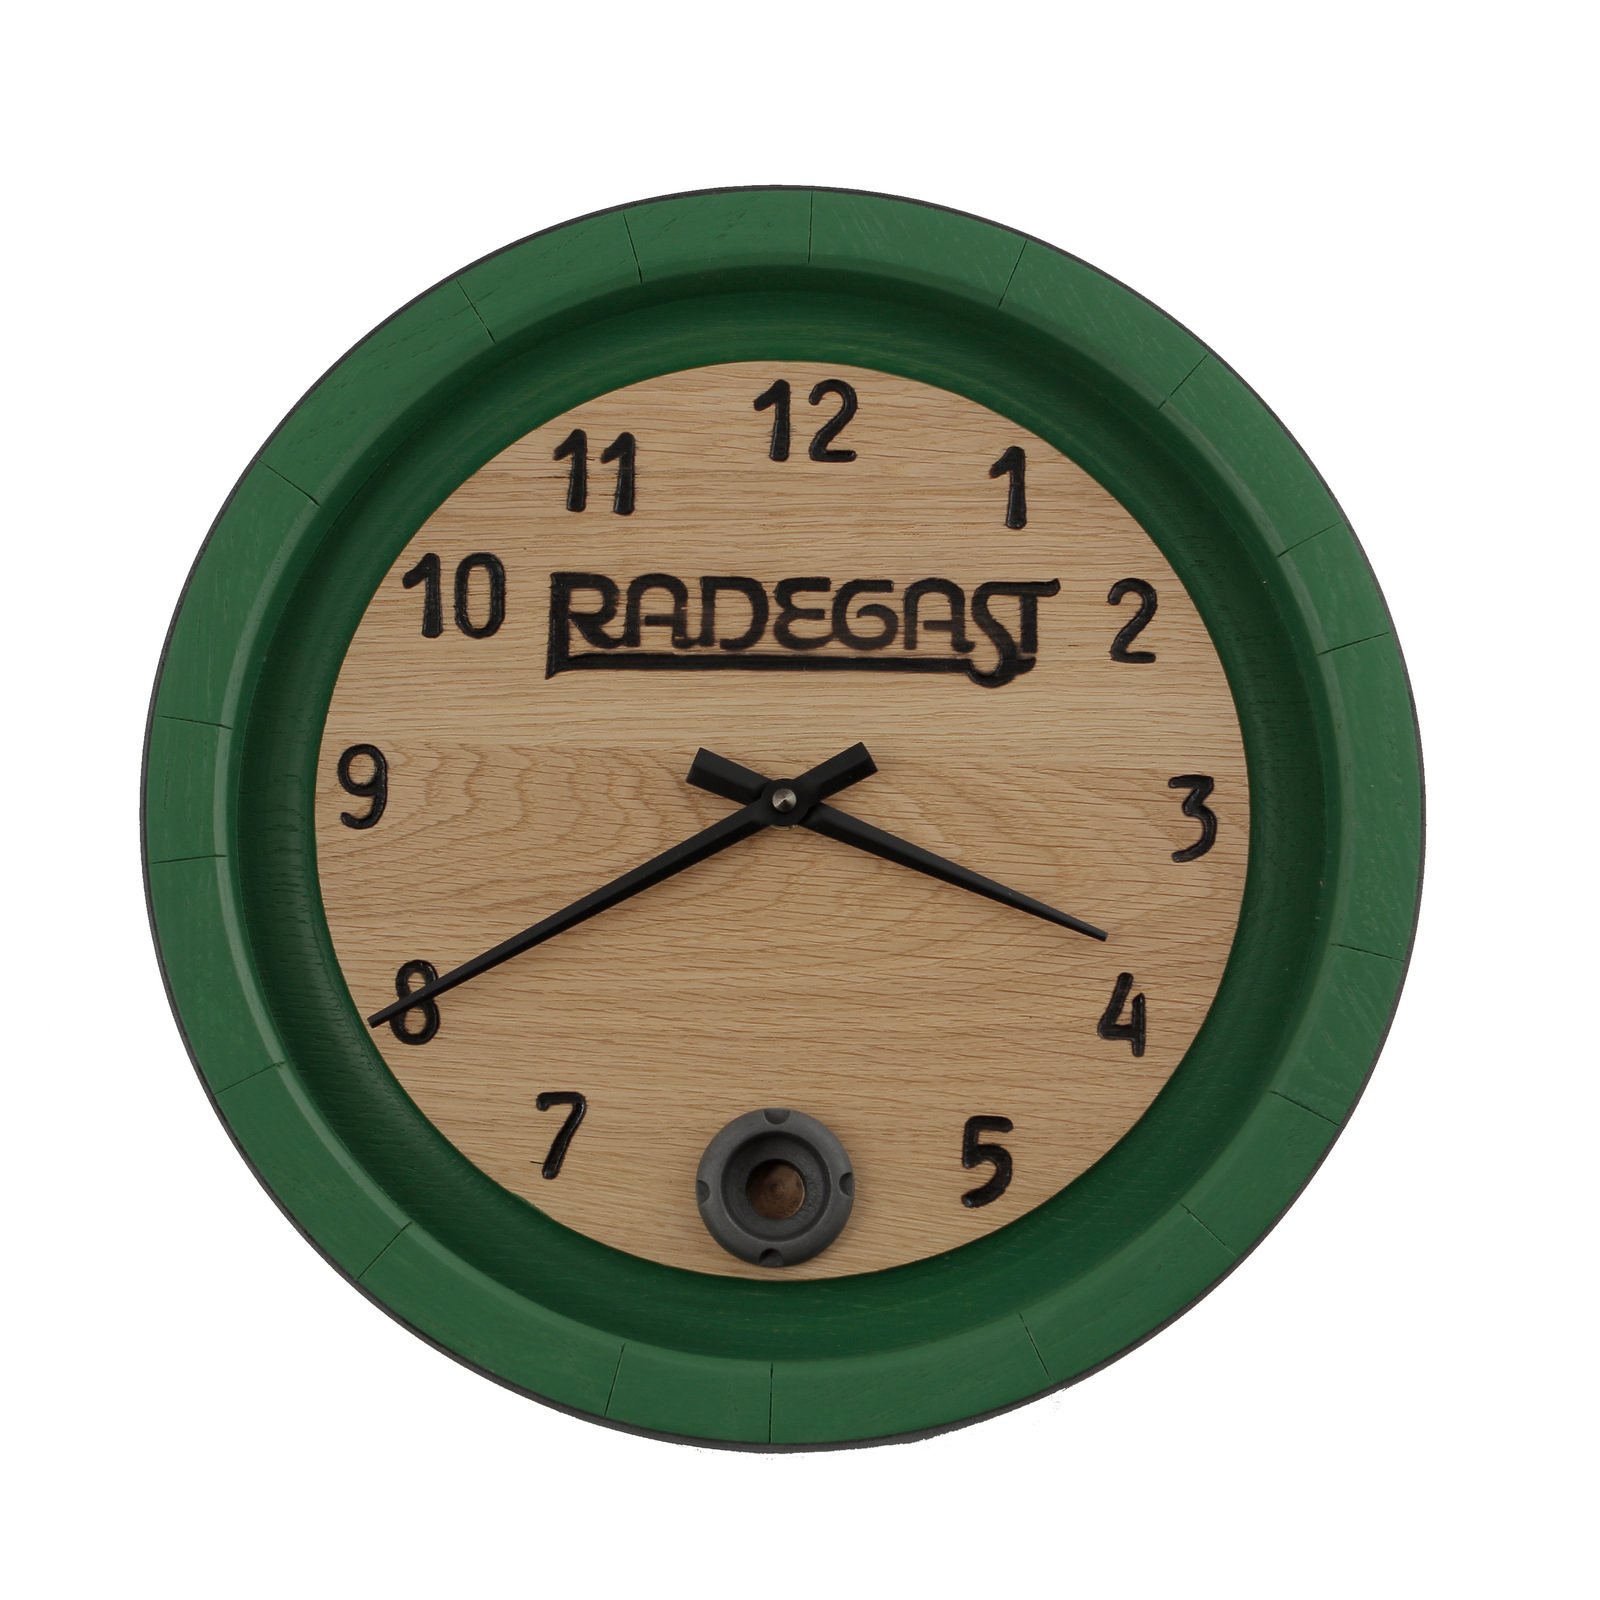 Radegast Clock